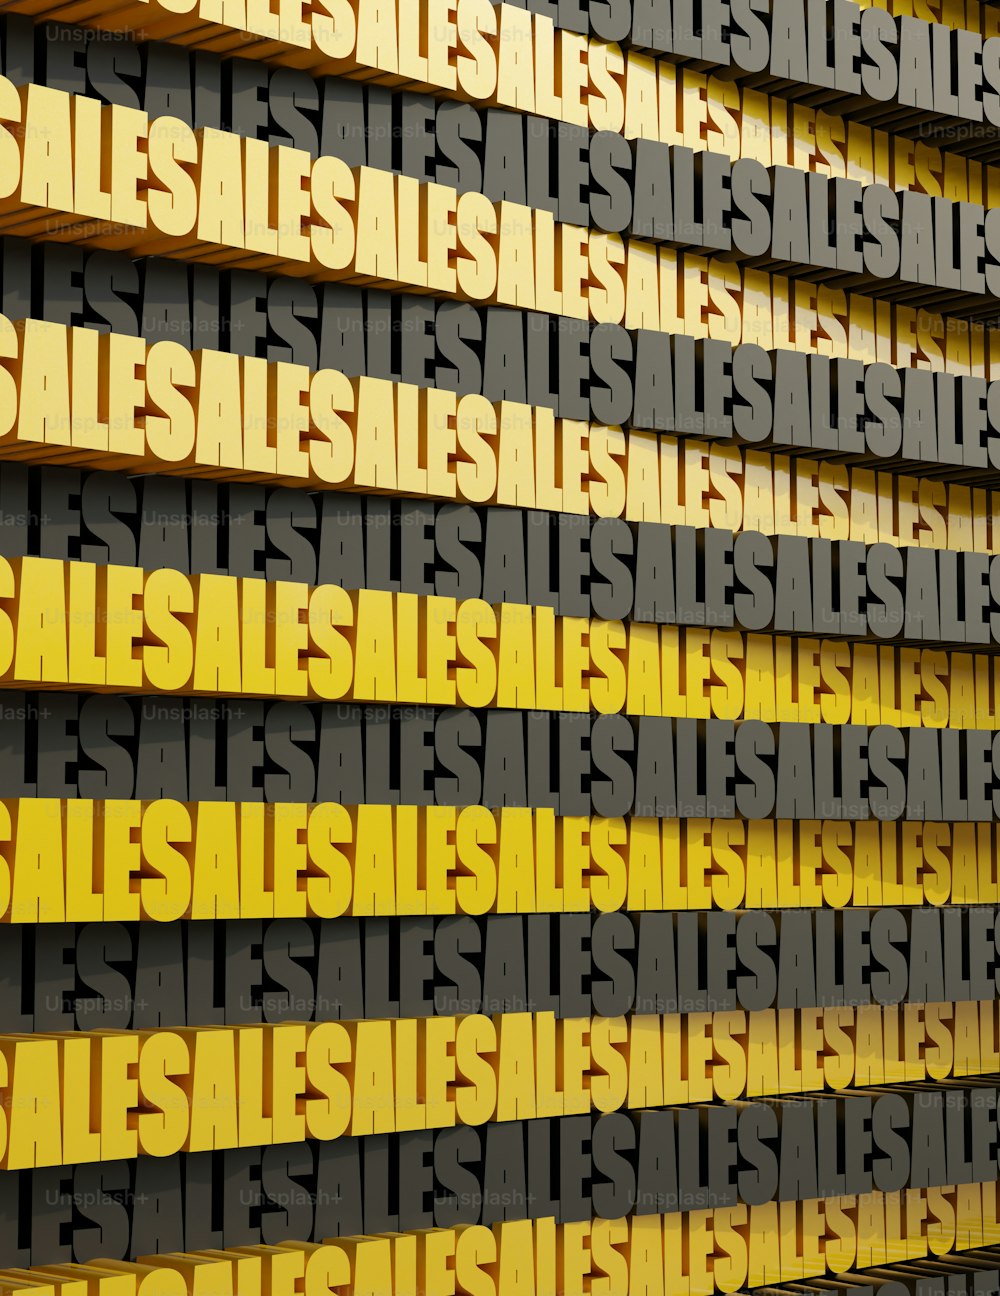 un mur jaune et noir avec beaucoup de mots dessus